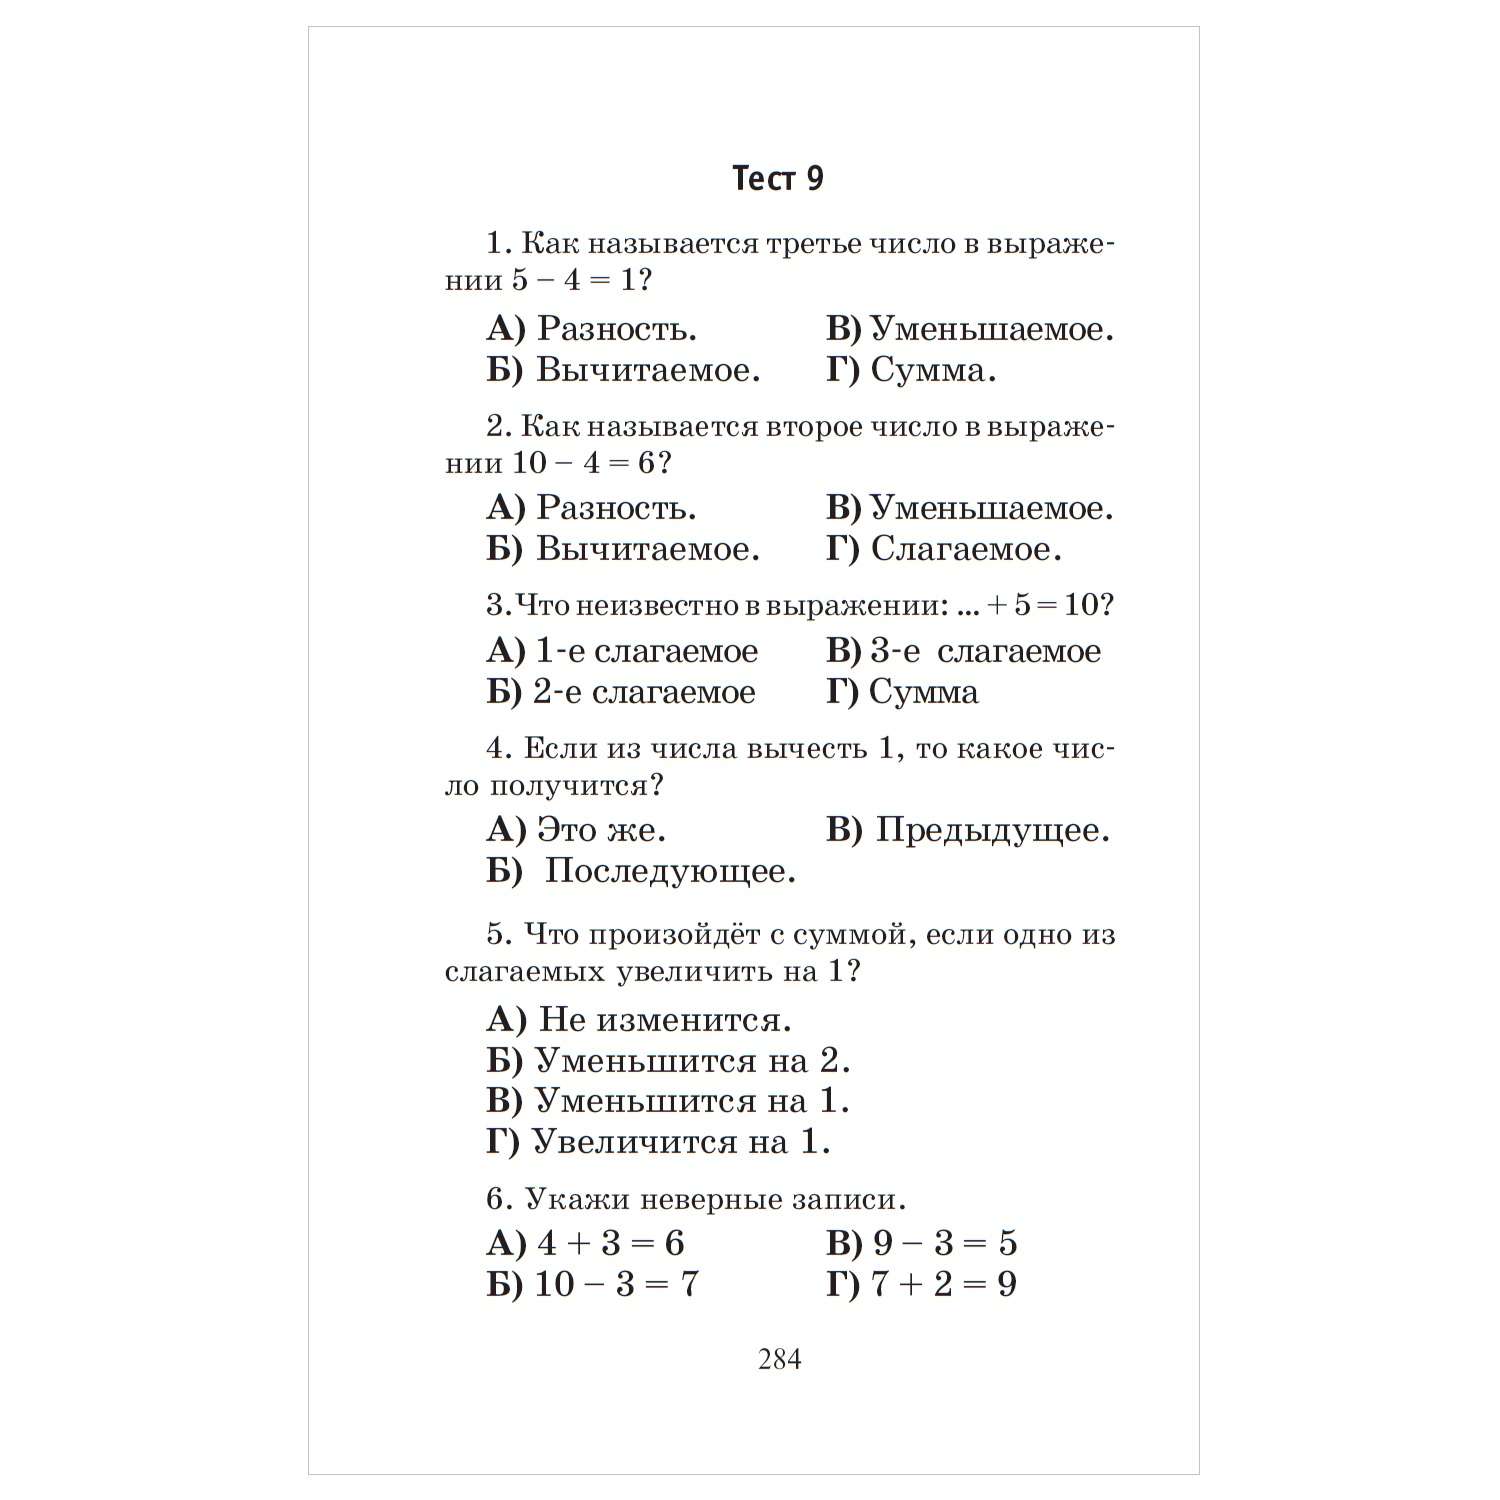 Книга АСТ Полный курс математики 1класс все типы заданий все виды задач примеров неравенств все контрольные - фото 11